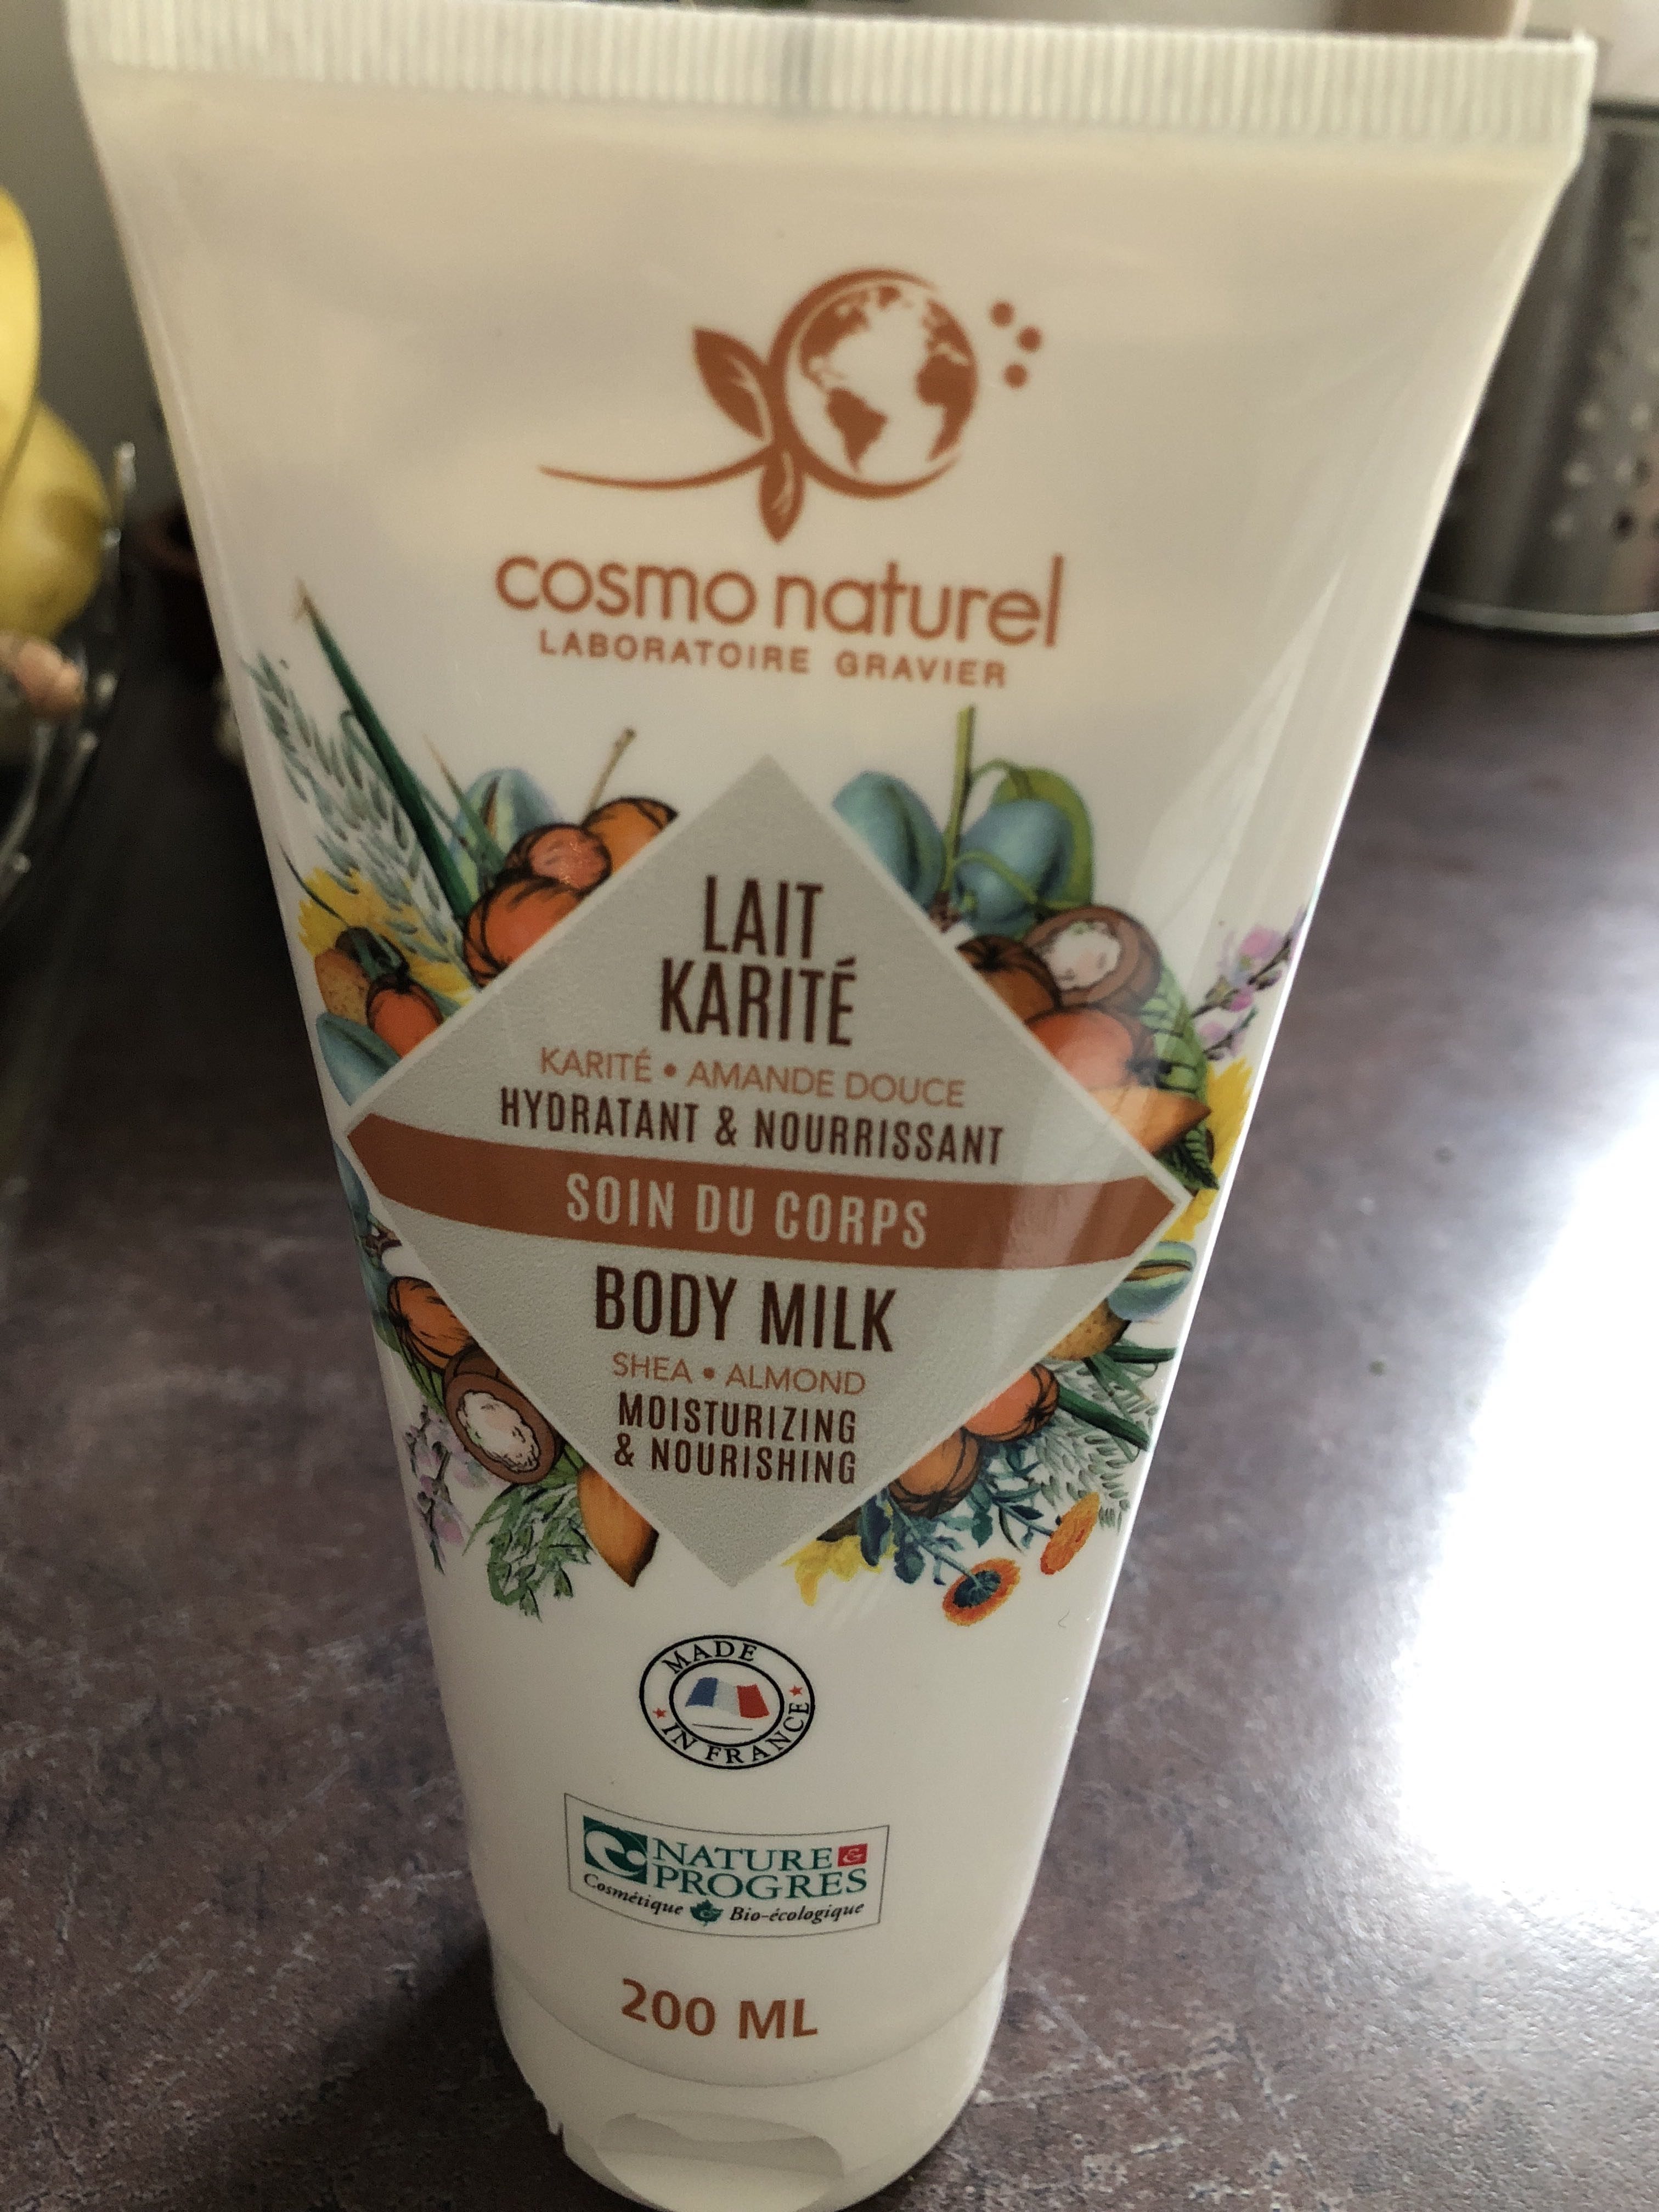 Lait karité body milk - Product - fr